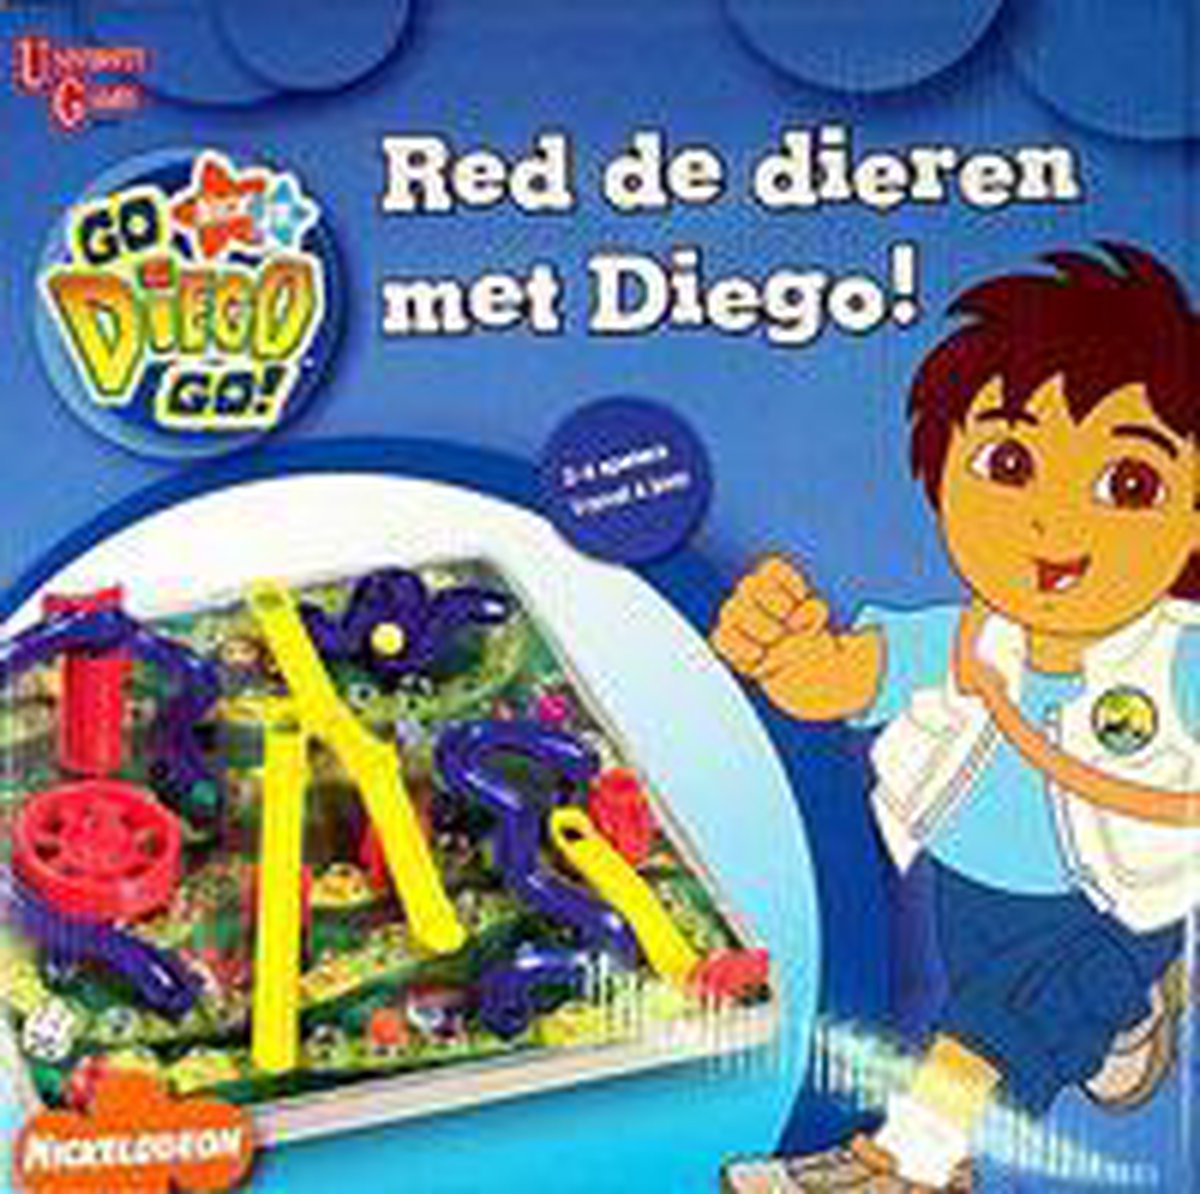 lawaai Uil Absoluut Red de dieren met Diego! | Games | bol.com